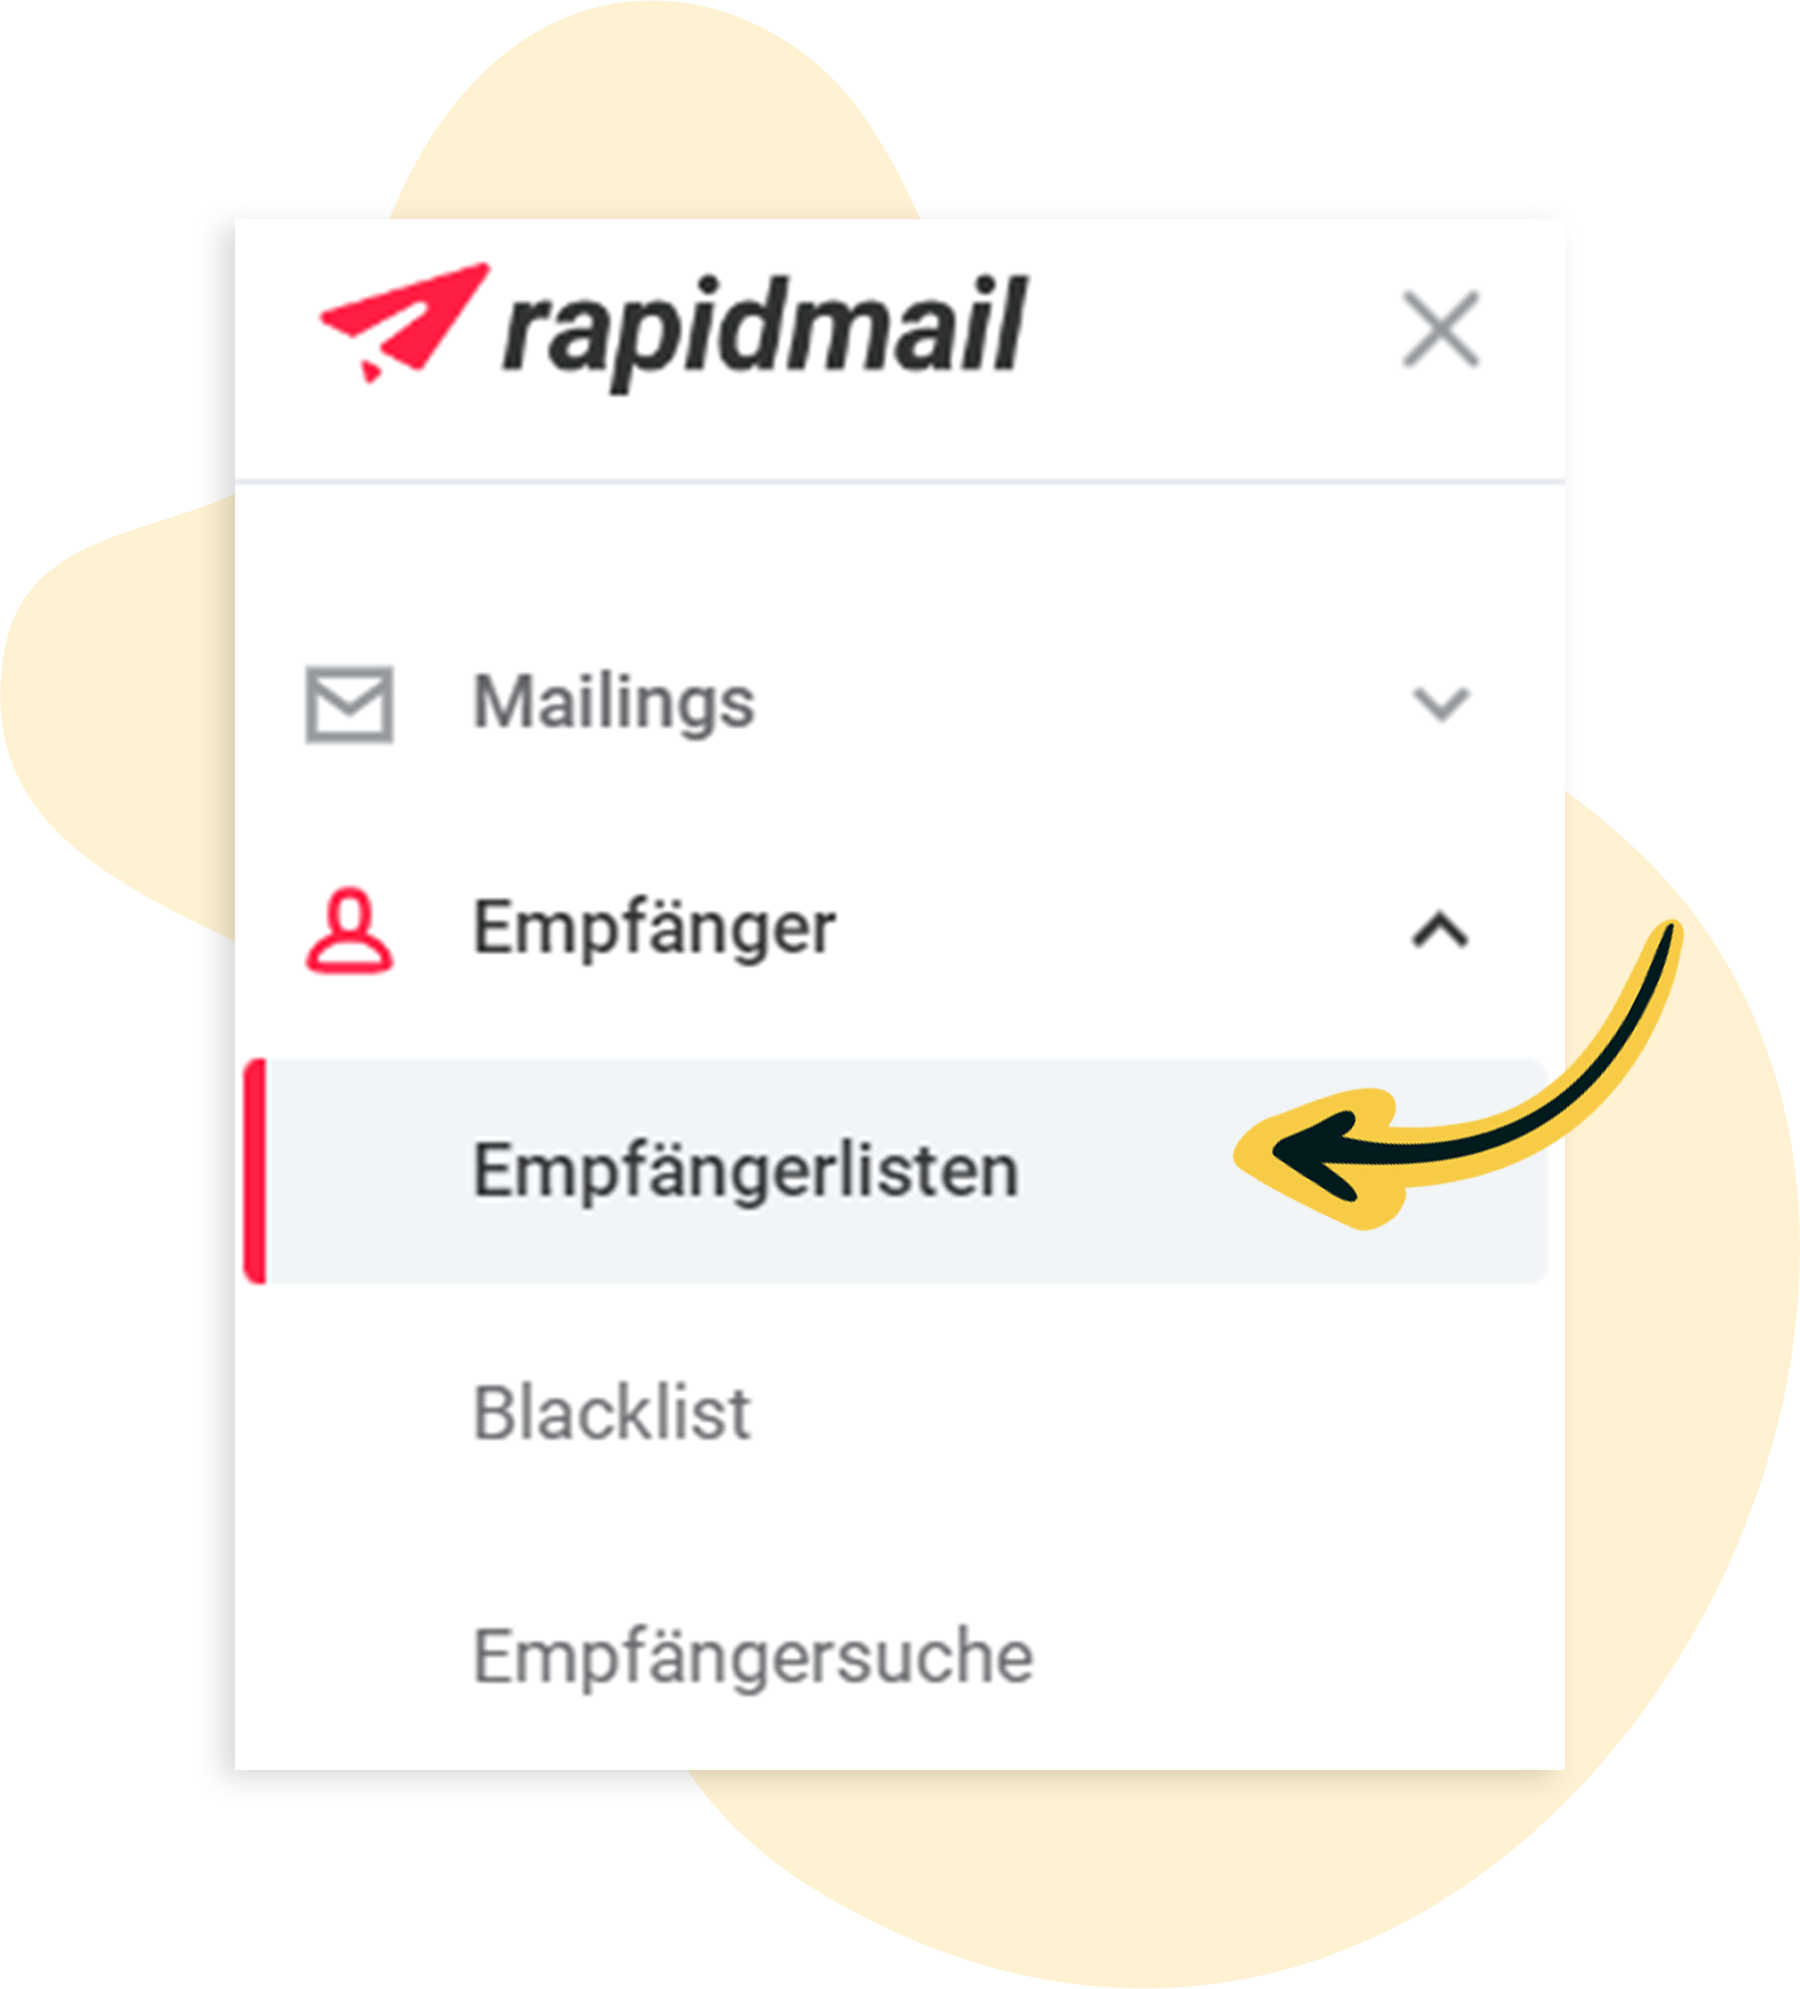 rapidmail: Empfängerlisten aufrufen